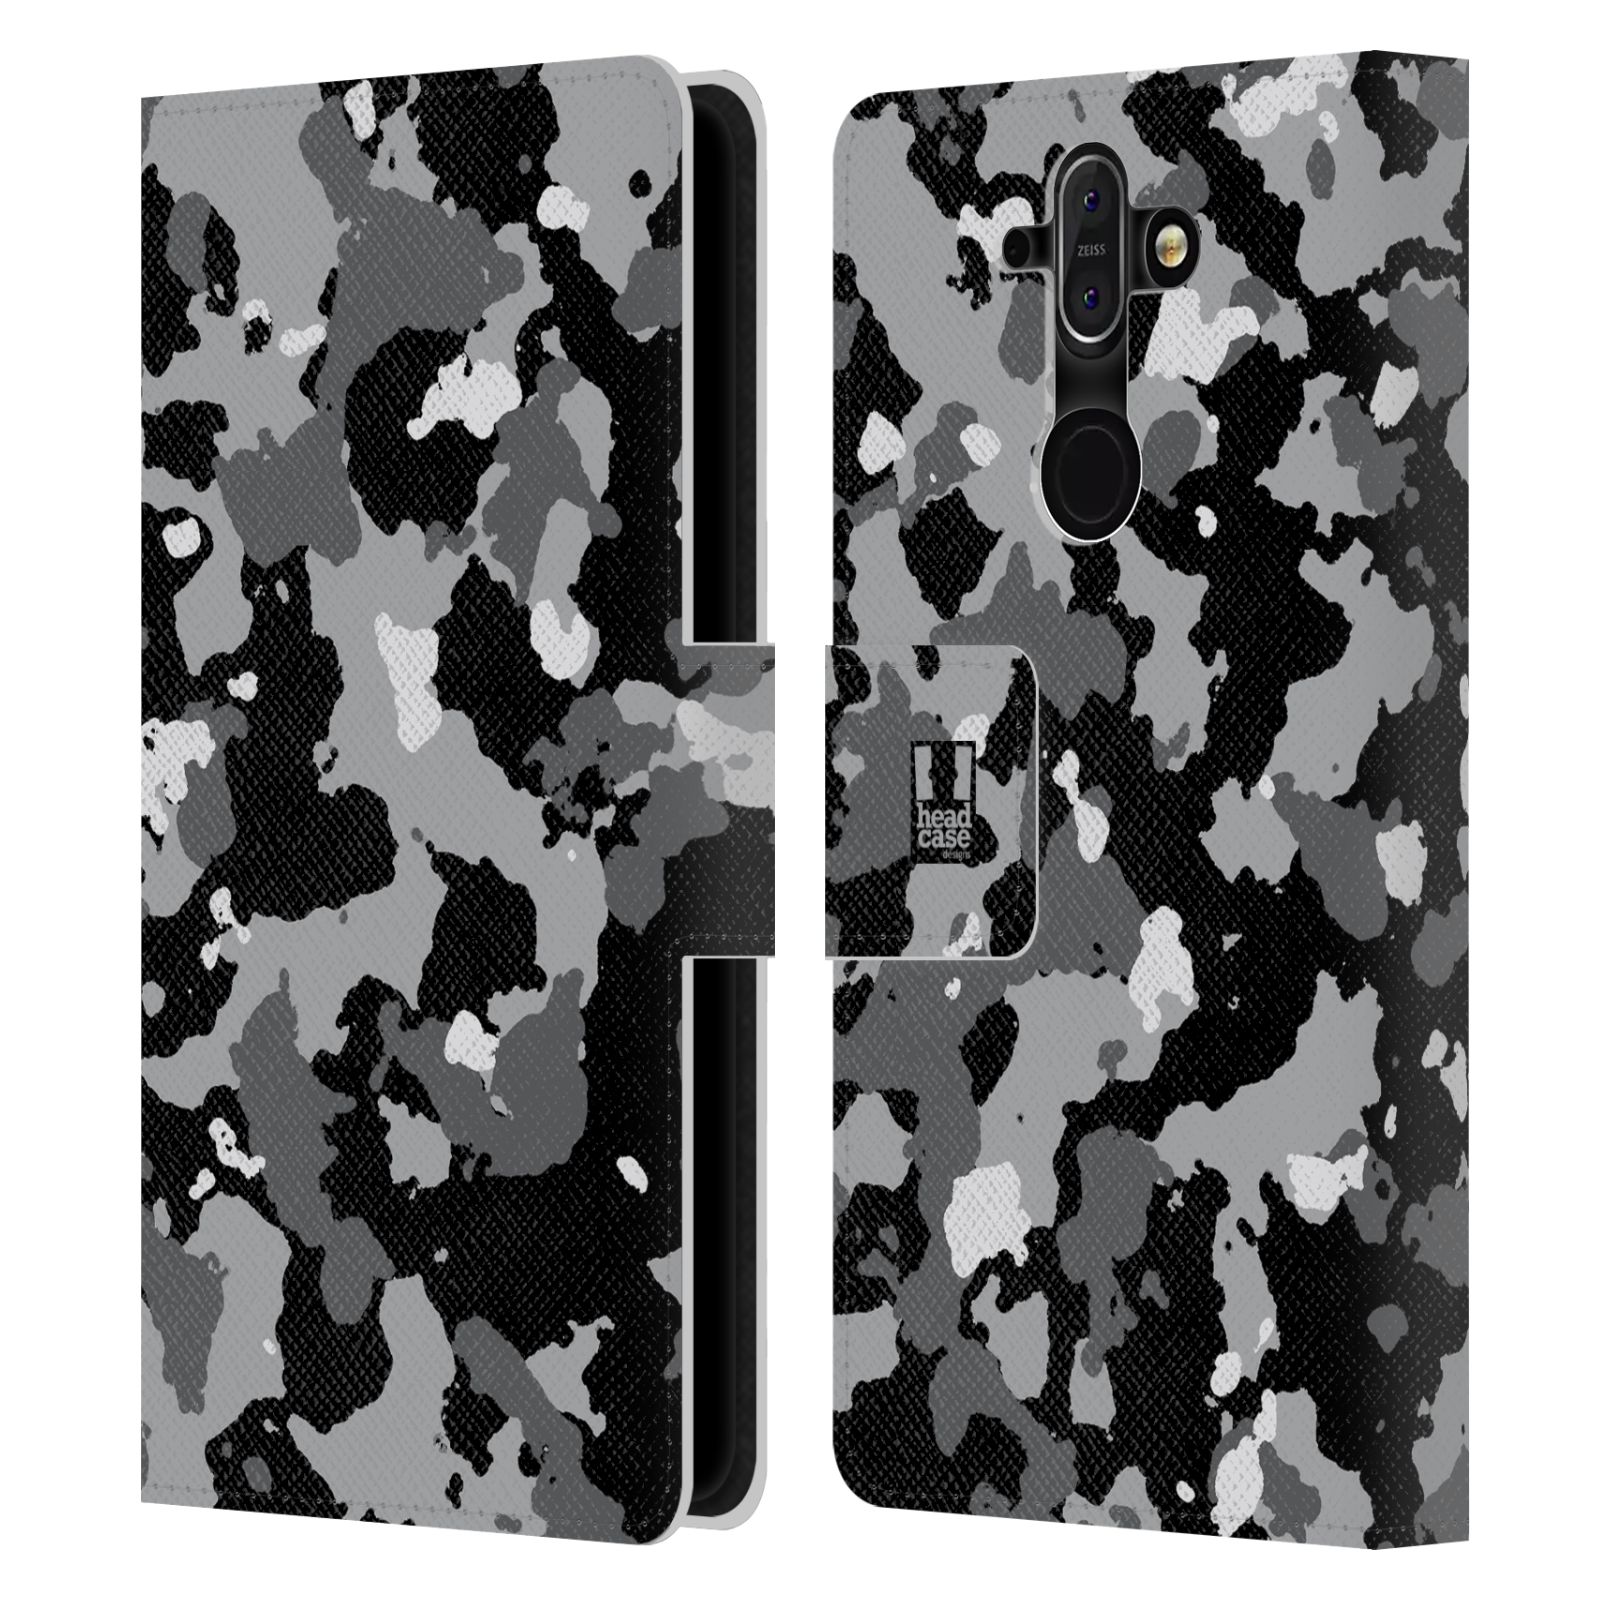 Pouzdro na mobil Nokia 8 Sirocco - Head Case - kamuflaž černá a šedá